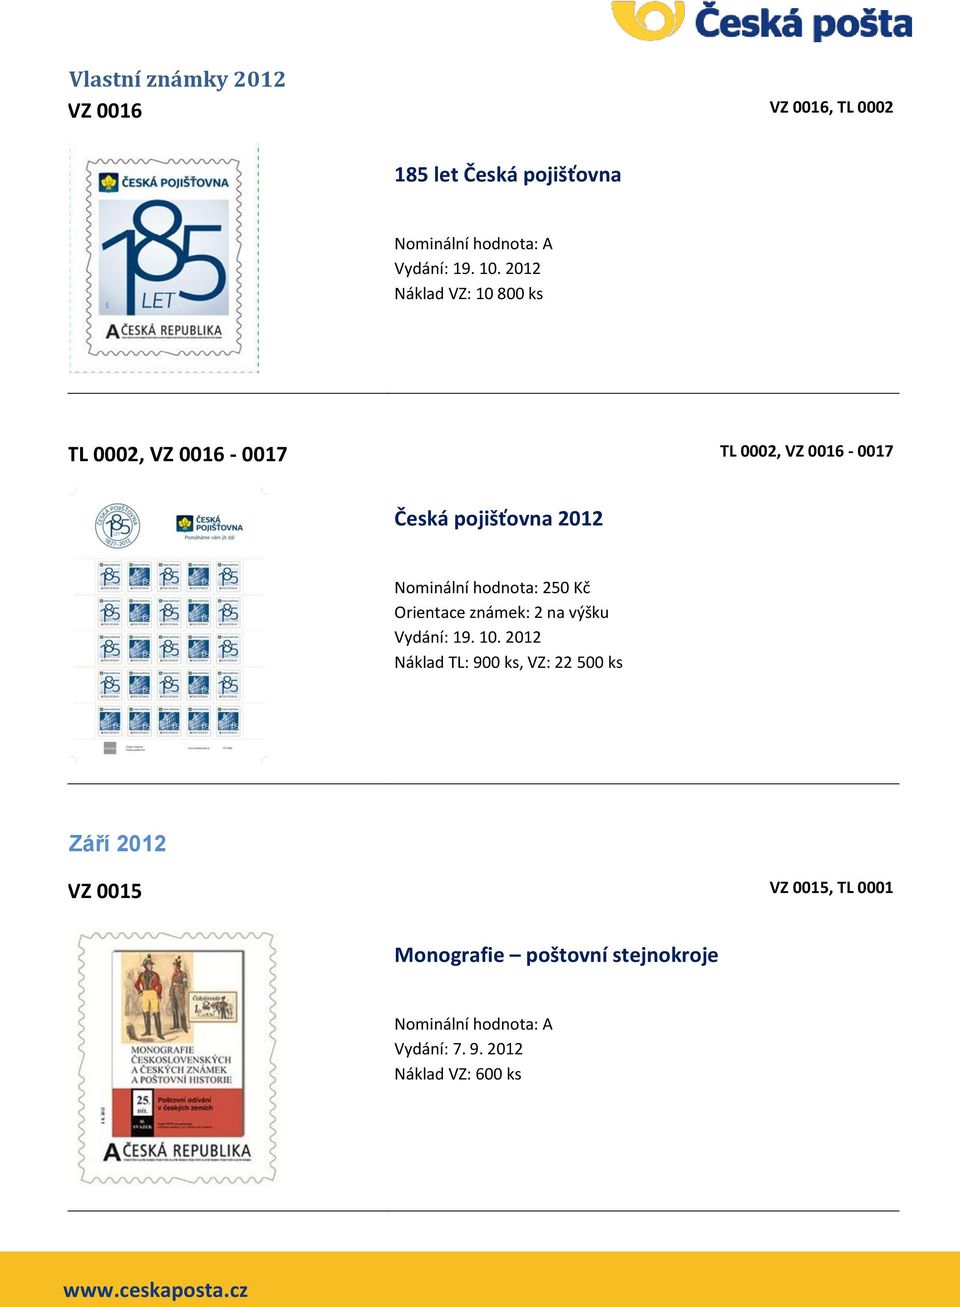 pojišťovna 2012 Nominální hodnota: 250 Kč Orientace známek: 2 na výšku Vydání: 19.